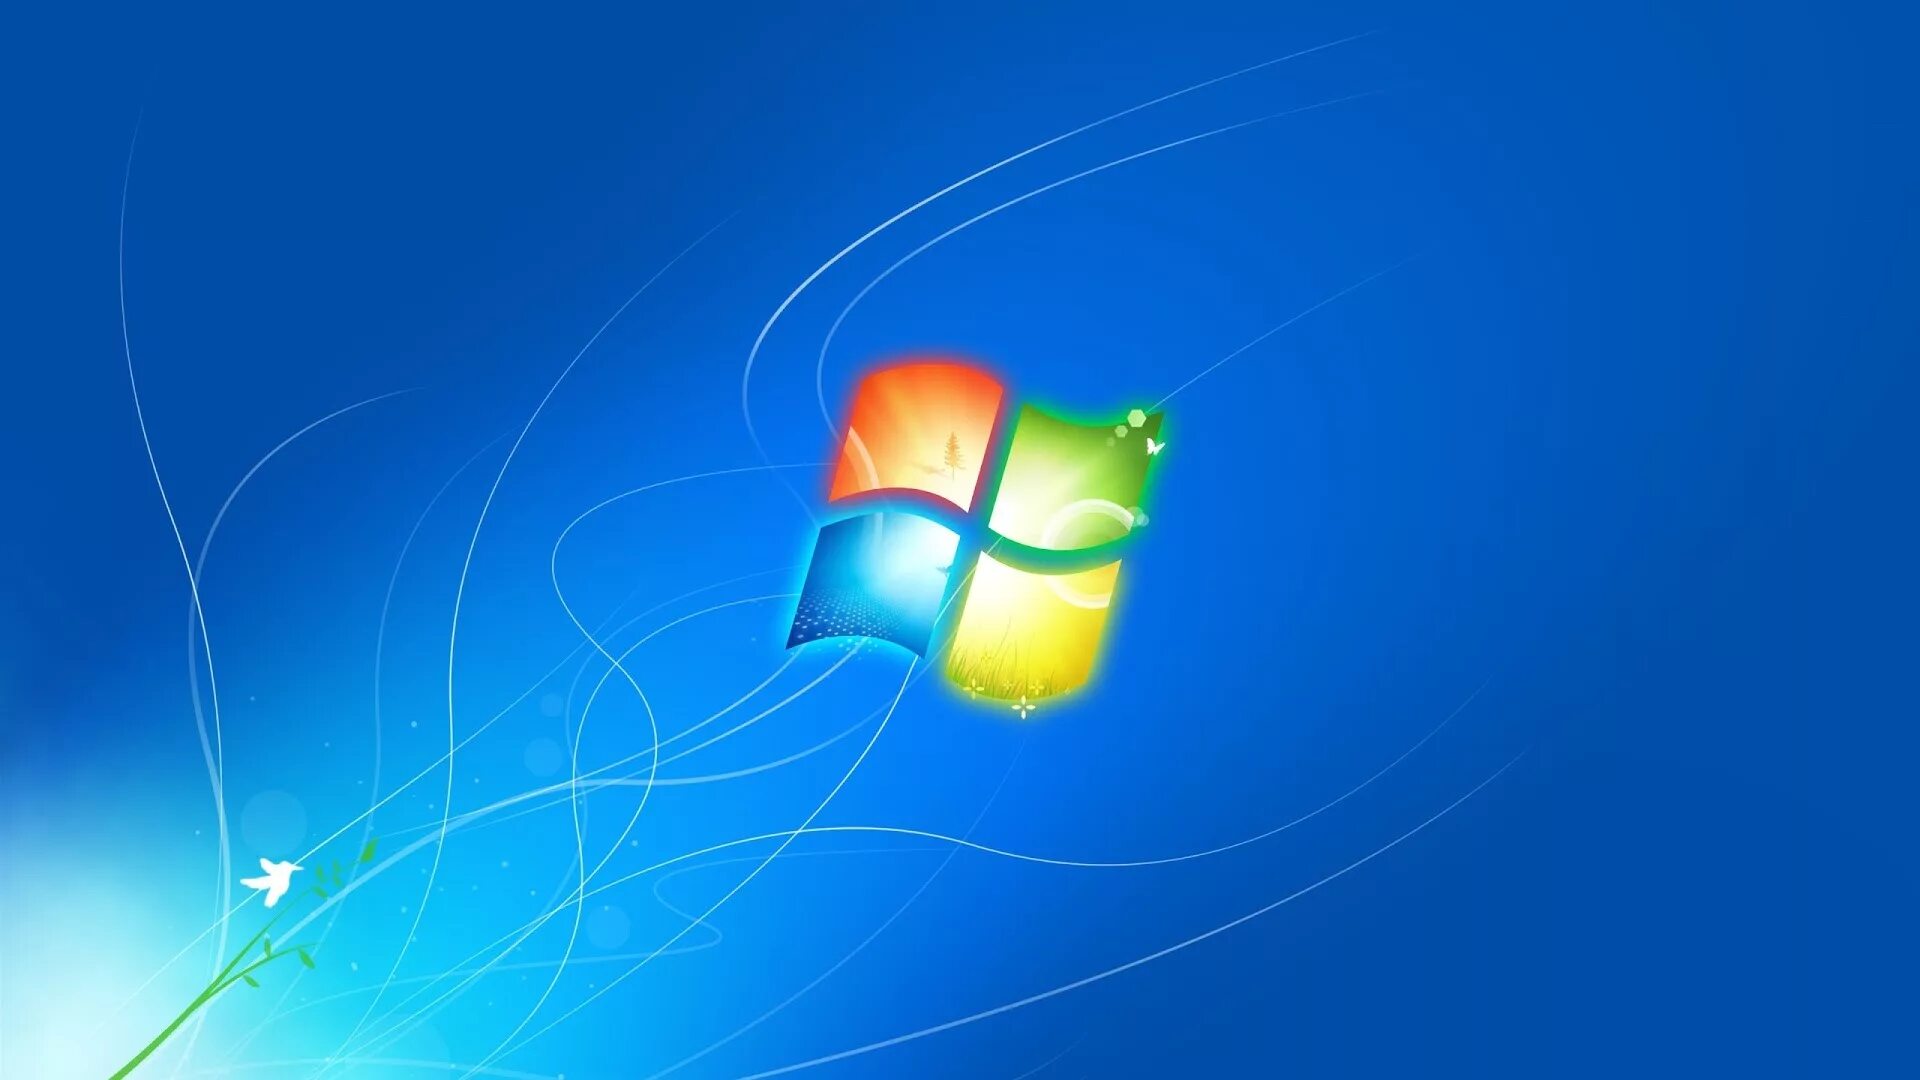 Сборки вин 7. Виндовс 7. Заставка виндовс. Обои Windows 7. Логотип Windows 7.